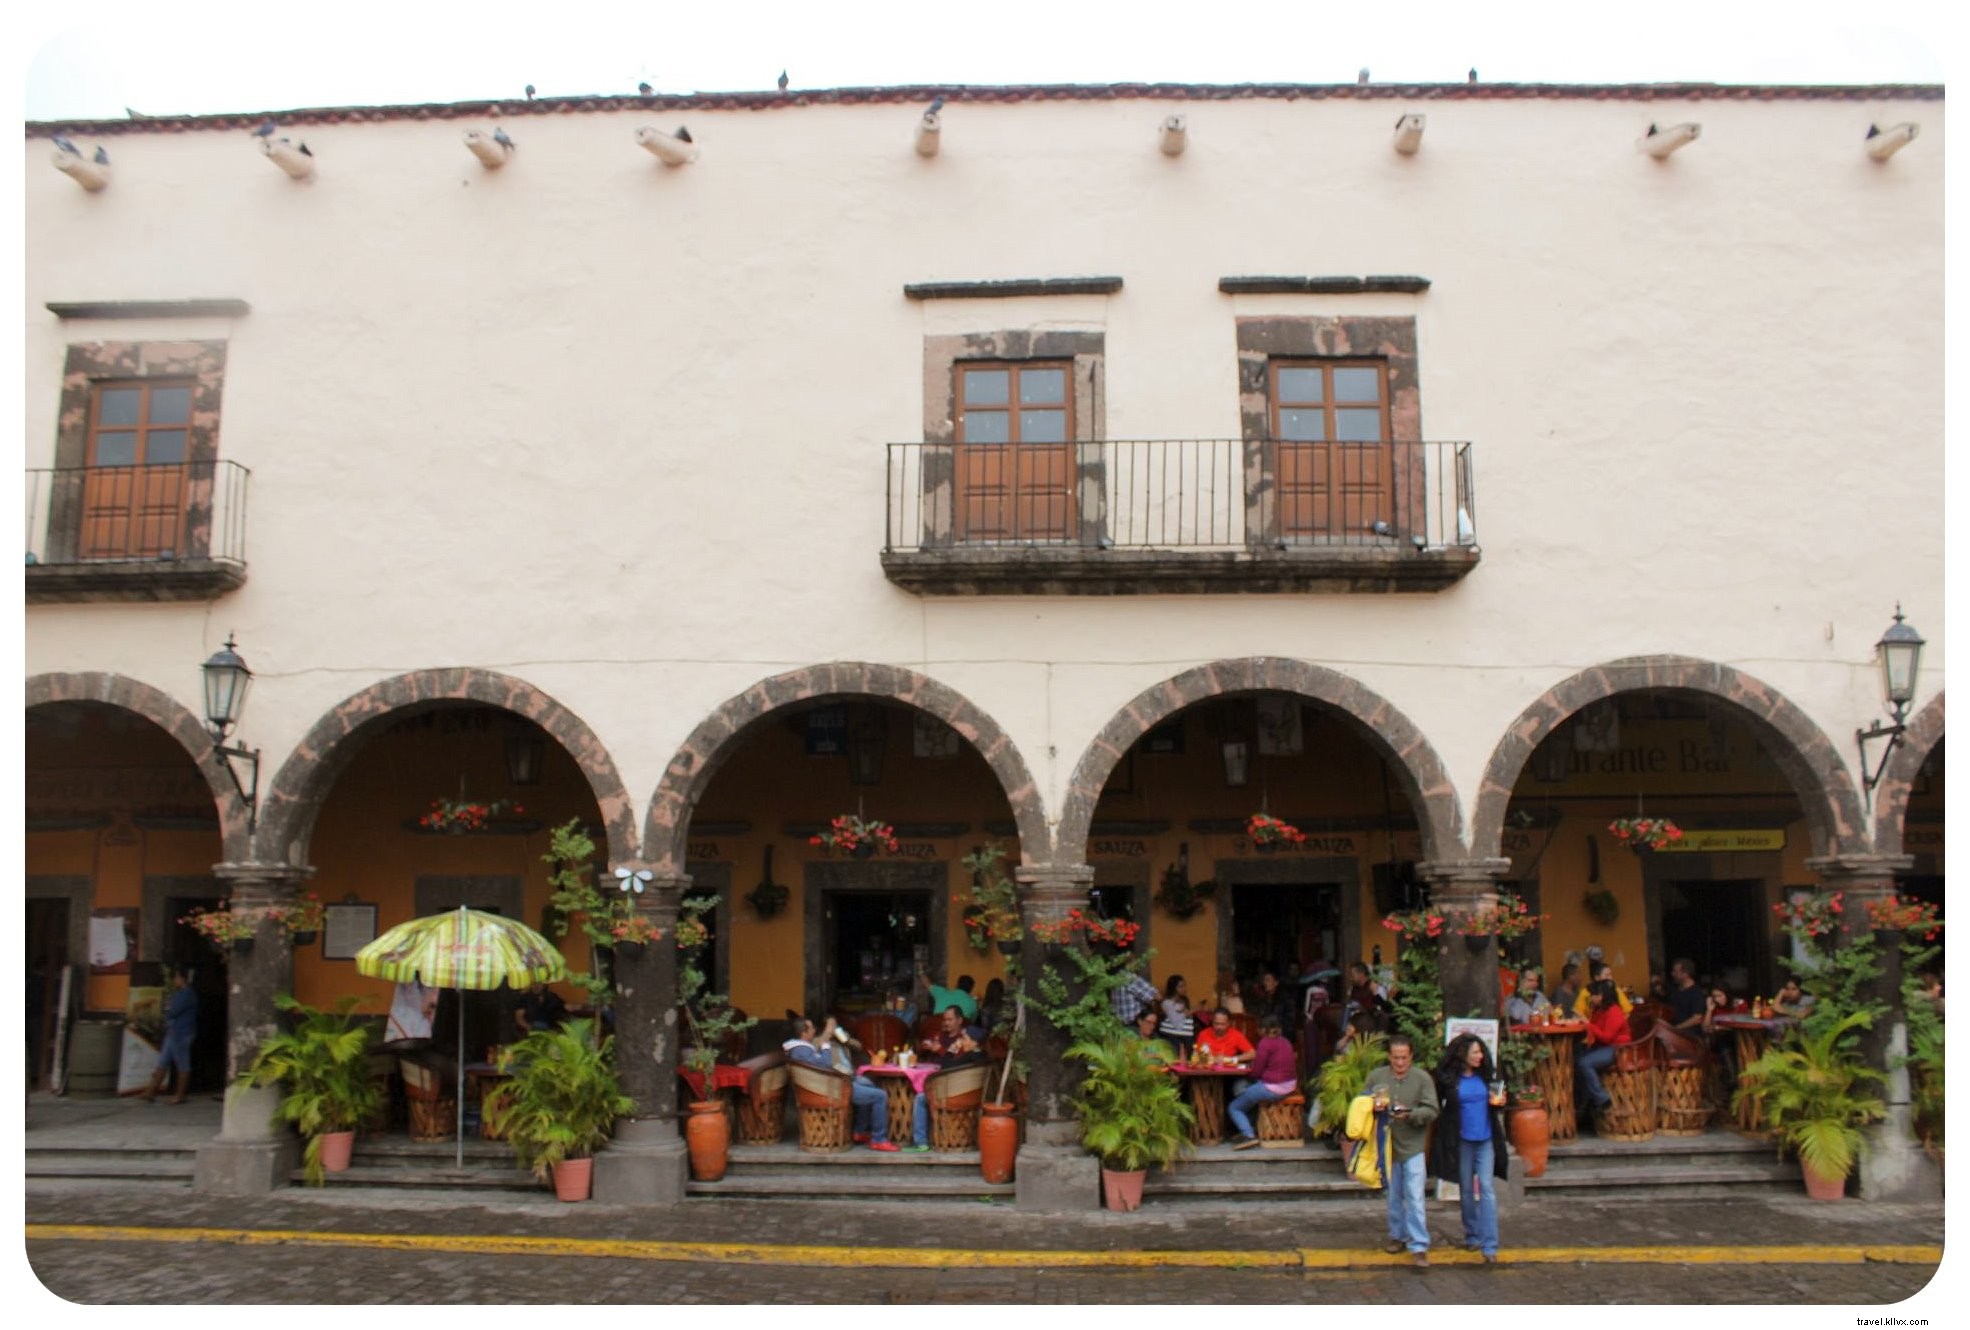 テキーラ、 アートとマリアッチ：グアダラハラで本物のメキシコを体験する